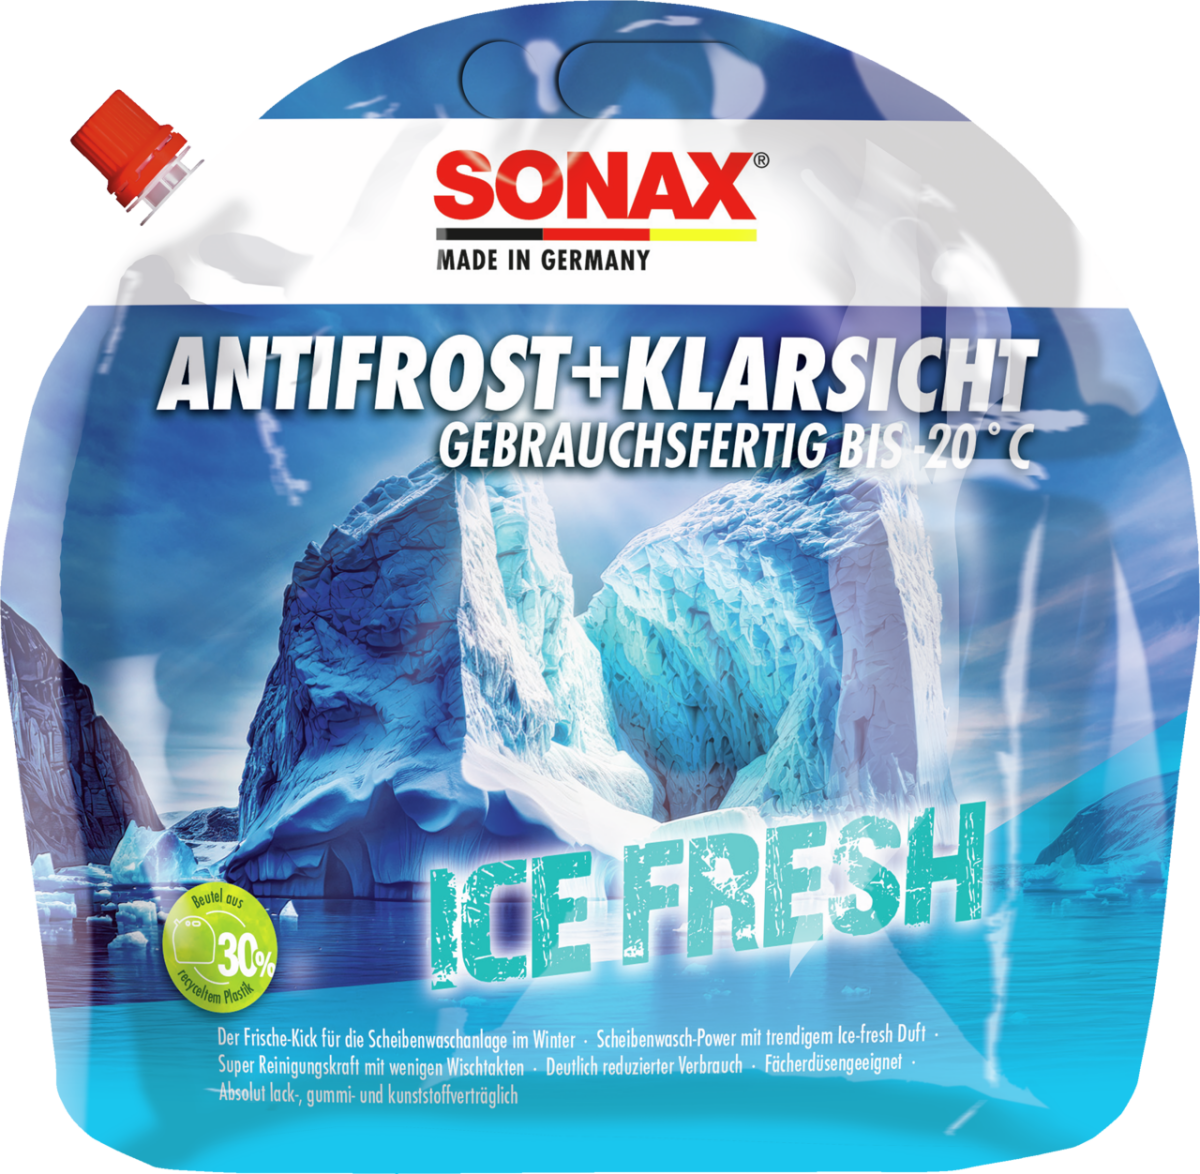 SONAX AntiFrost+Klarsicht bis -20 °C Ice-fresh, 12,59 €